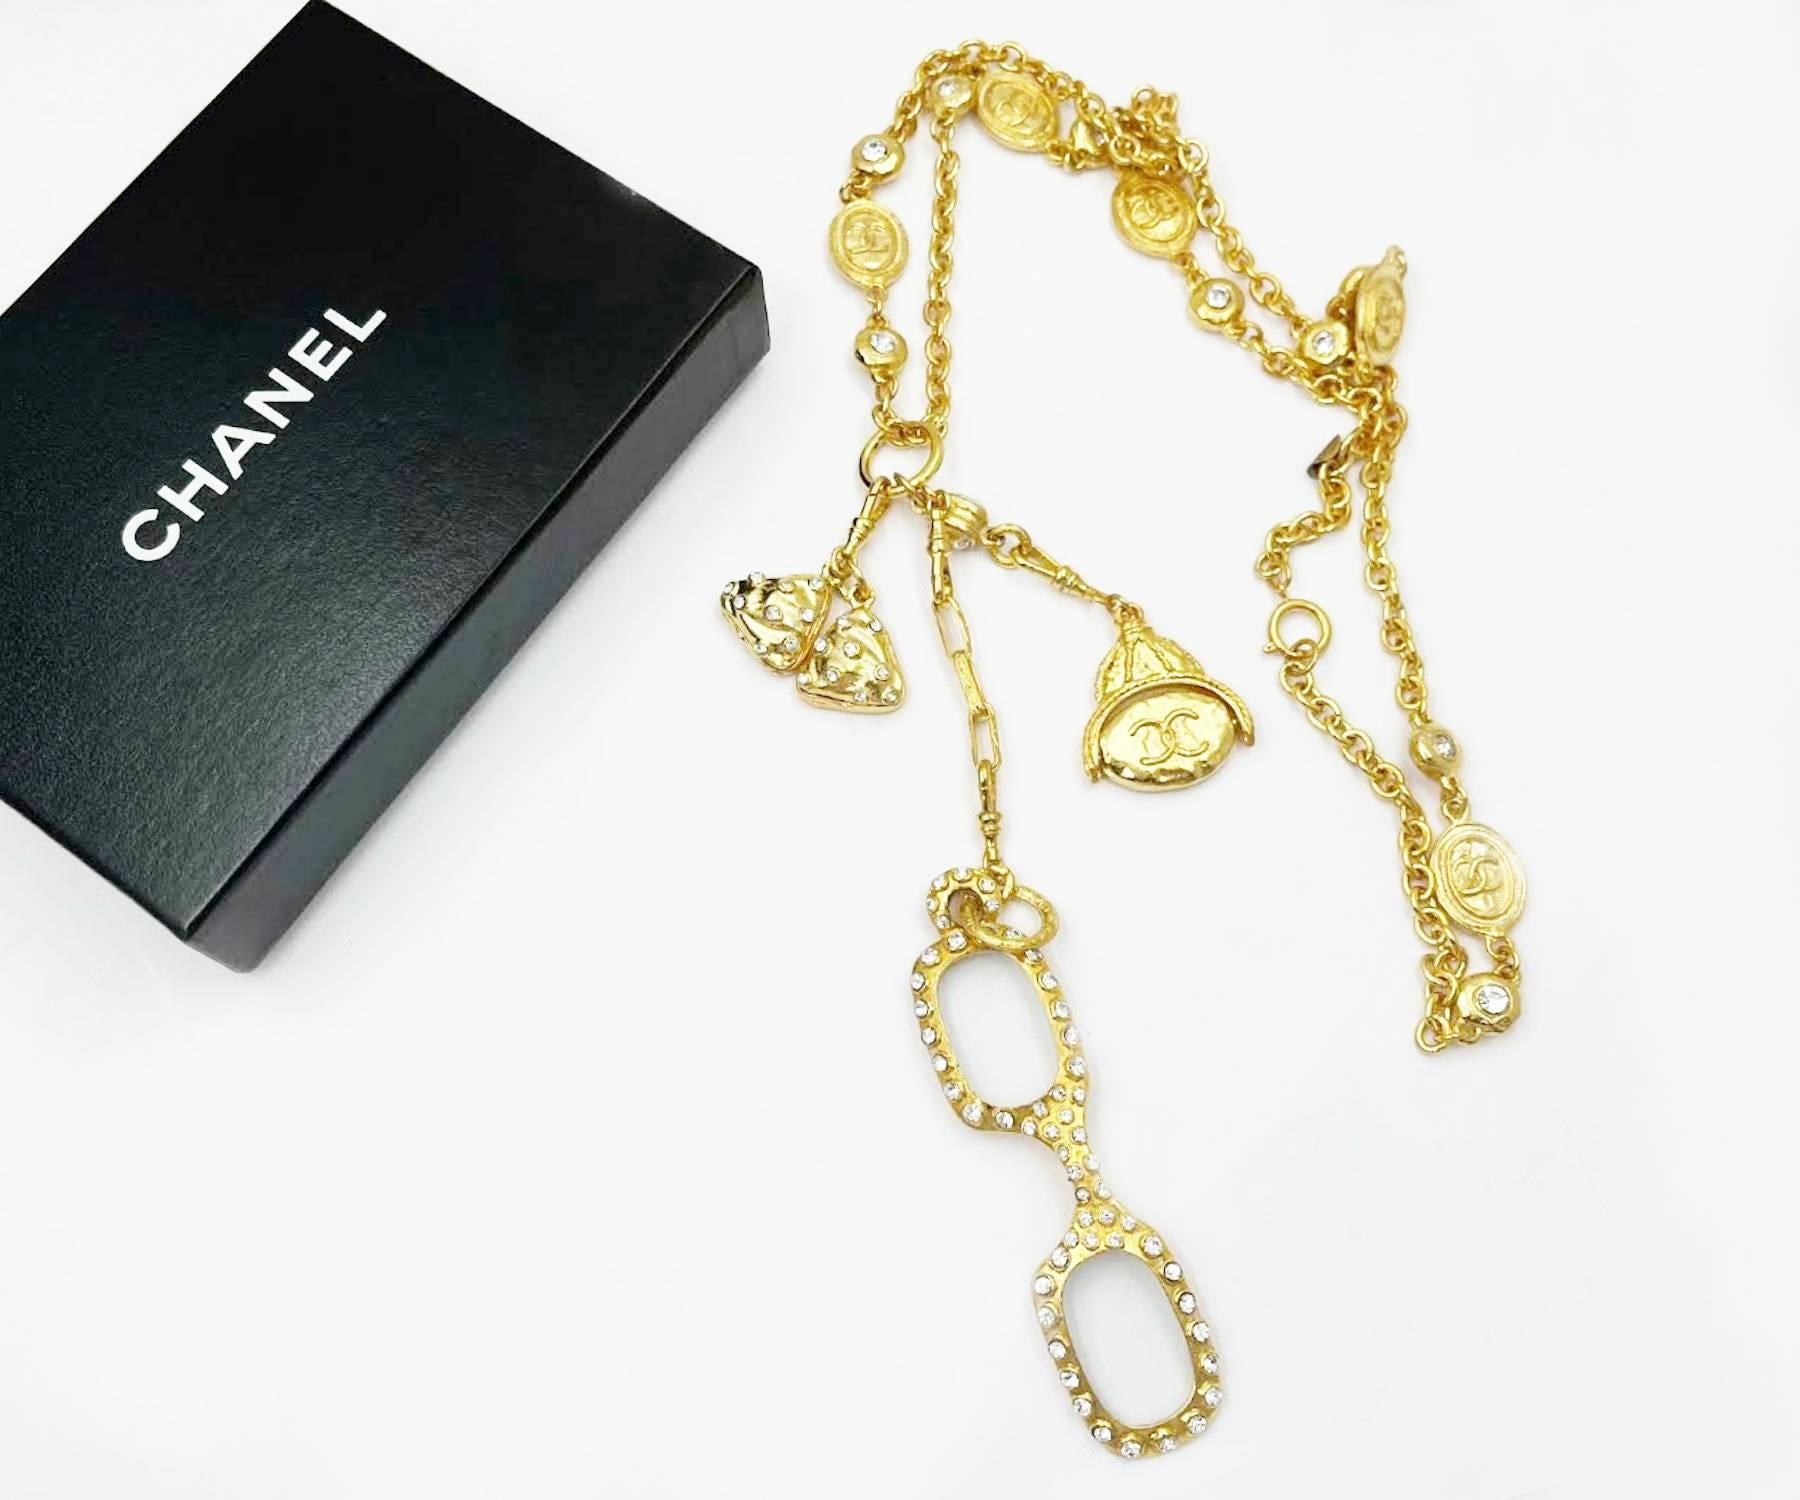 Chanel Vintage Gold plattiert CC Münze 3 Charm Lupe lange Halskette

* Gekennzeichnet Chanel
* Hergestellt in Frankreich
* Kommt mit dem Originalkarton

-Er ist ungefähr 34″ lang. Der längste Charme ist 7″ lang. Die Lupen sind 3,5″ x 1″ groß.
-Die